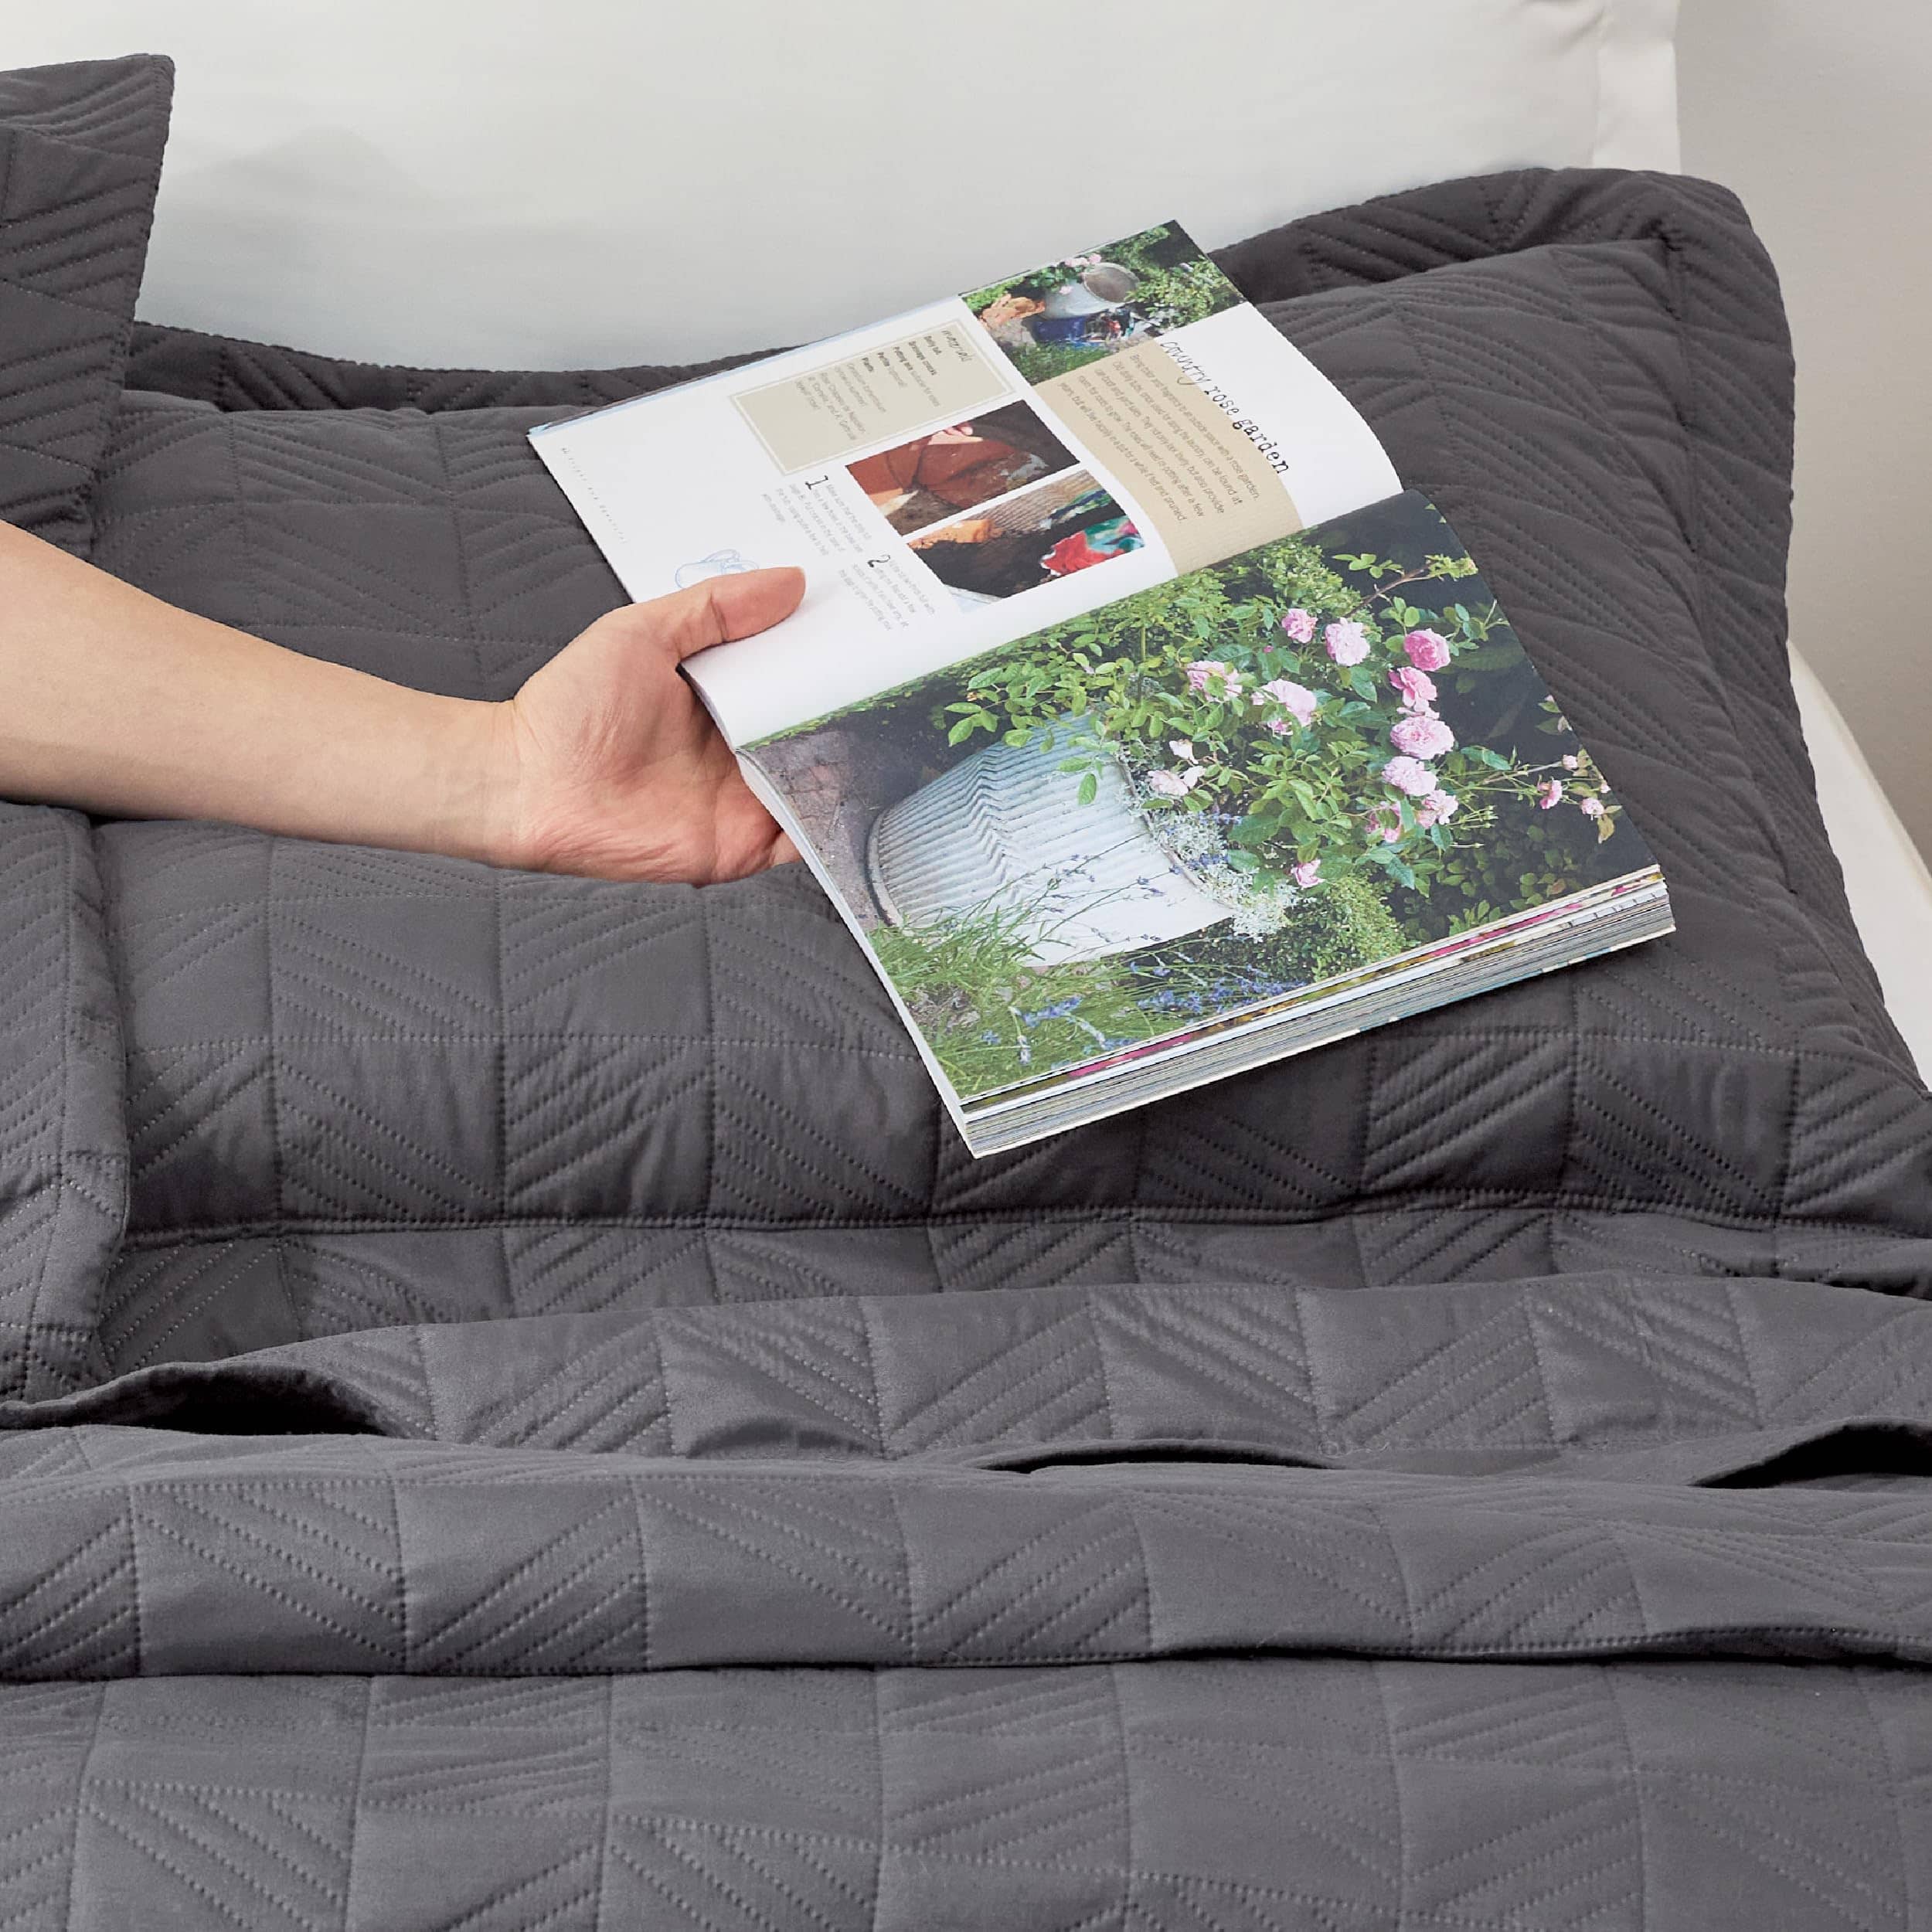 Bedsure Geometric Soft Ultrasonic Quilt Set